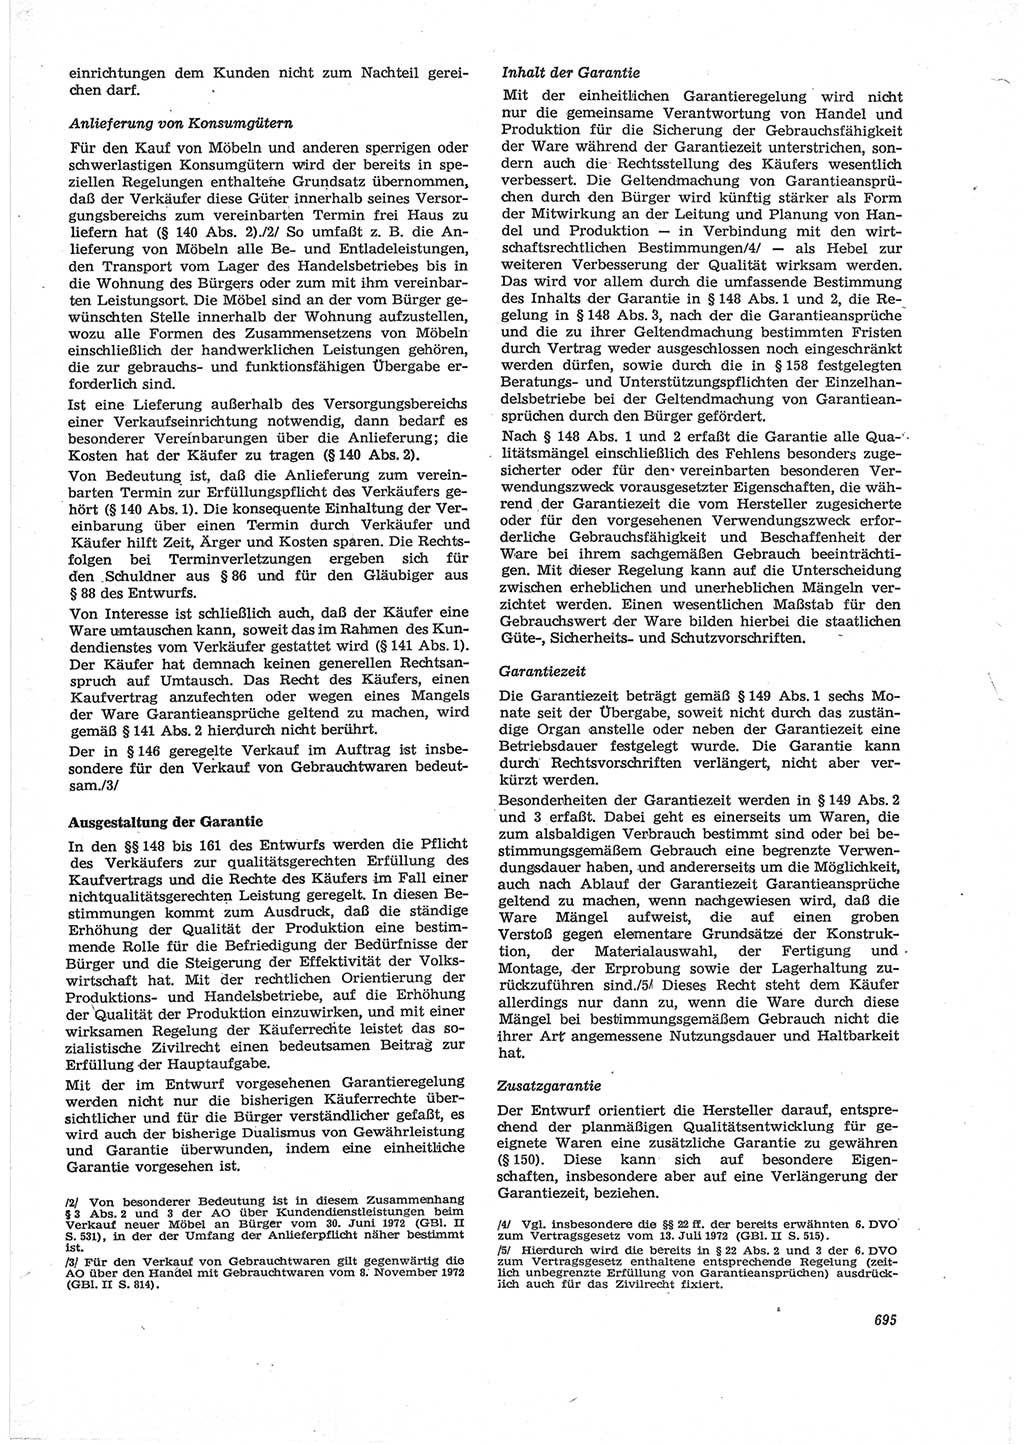 Neue Justiz (NJ), Zeitschrift für Recht und Rechtswissenschaft [Deutsche Demokratische Republik (DDR)], 28. Jahrgang 1974, Seite 695 (NJ DDR 1974, S. 695)